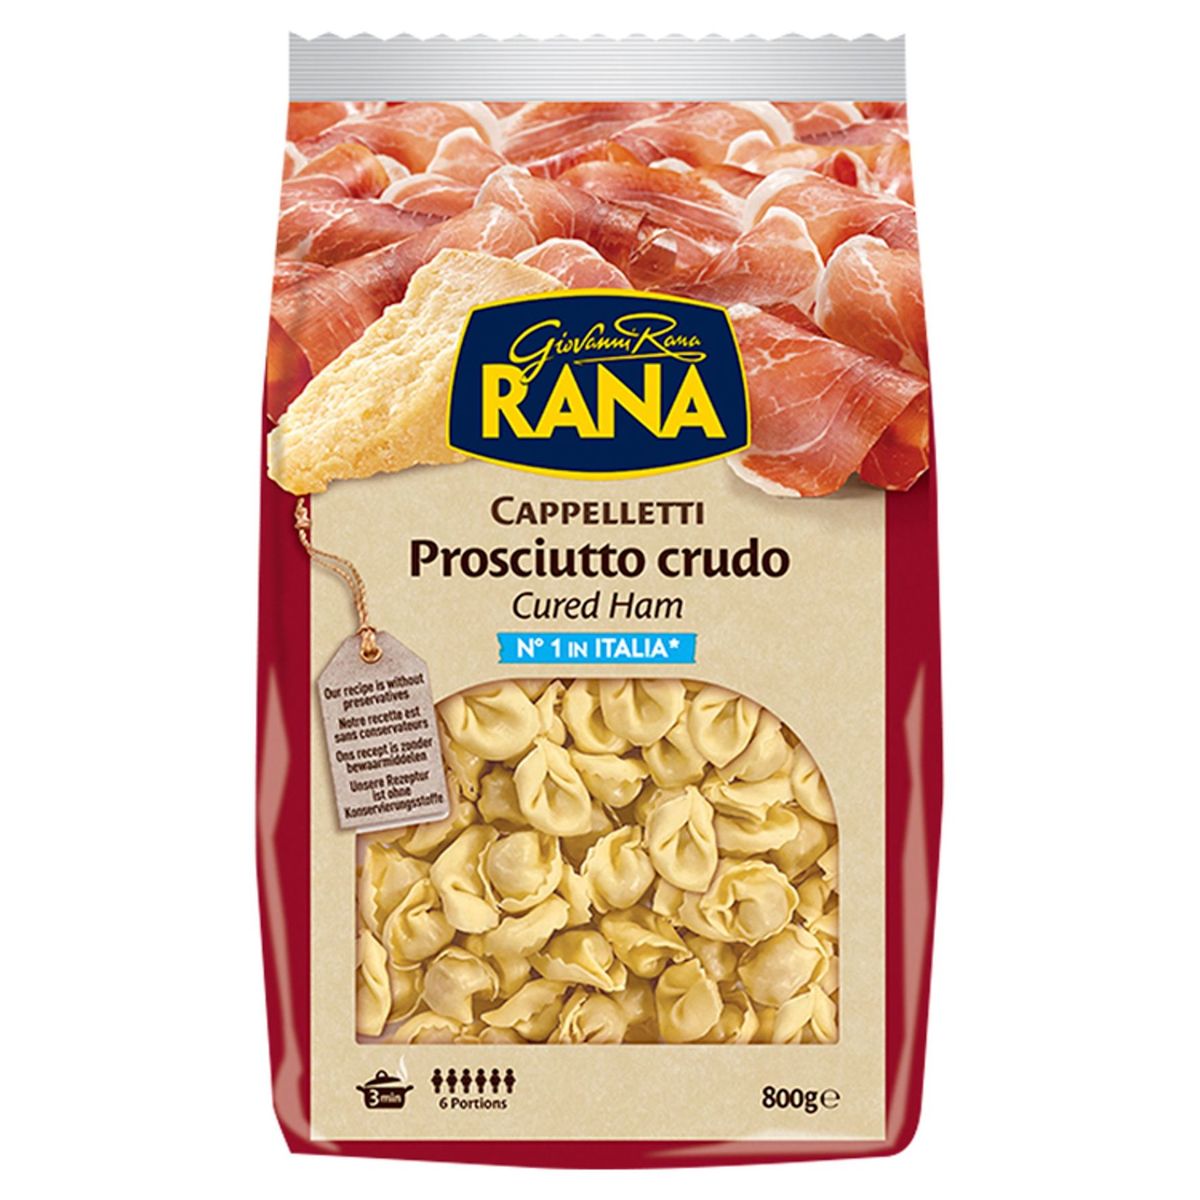 Giovanni Rana Cappelletti Prosciutto Crudo Cured Ham 800 g